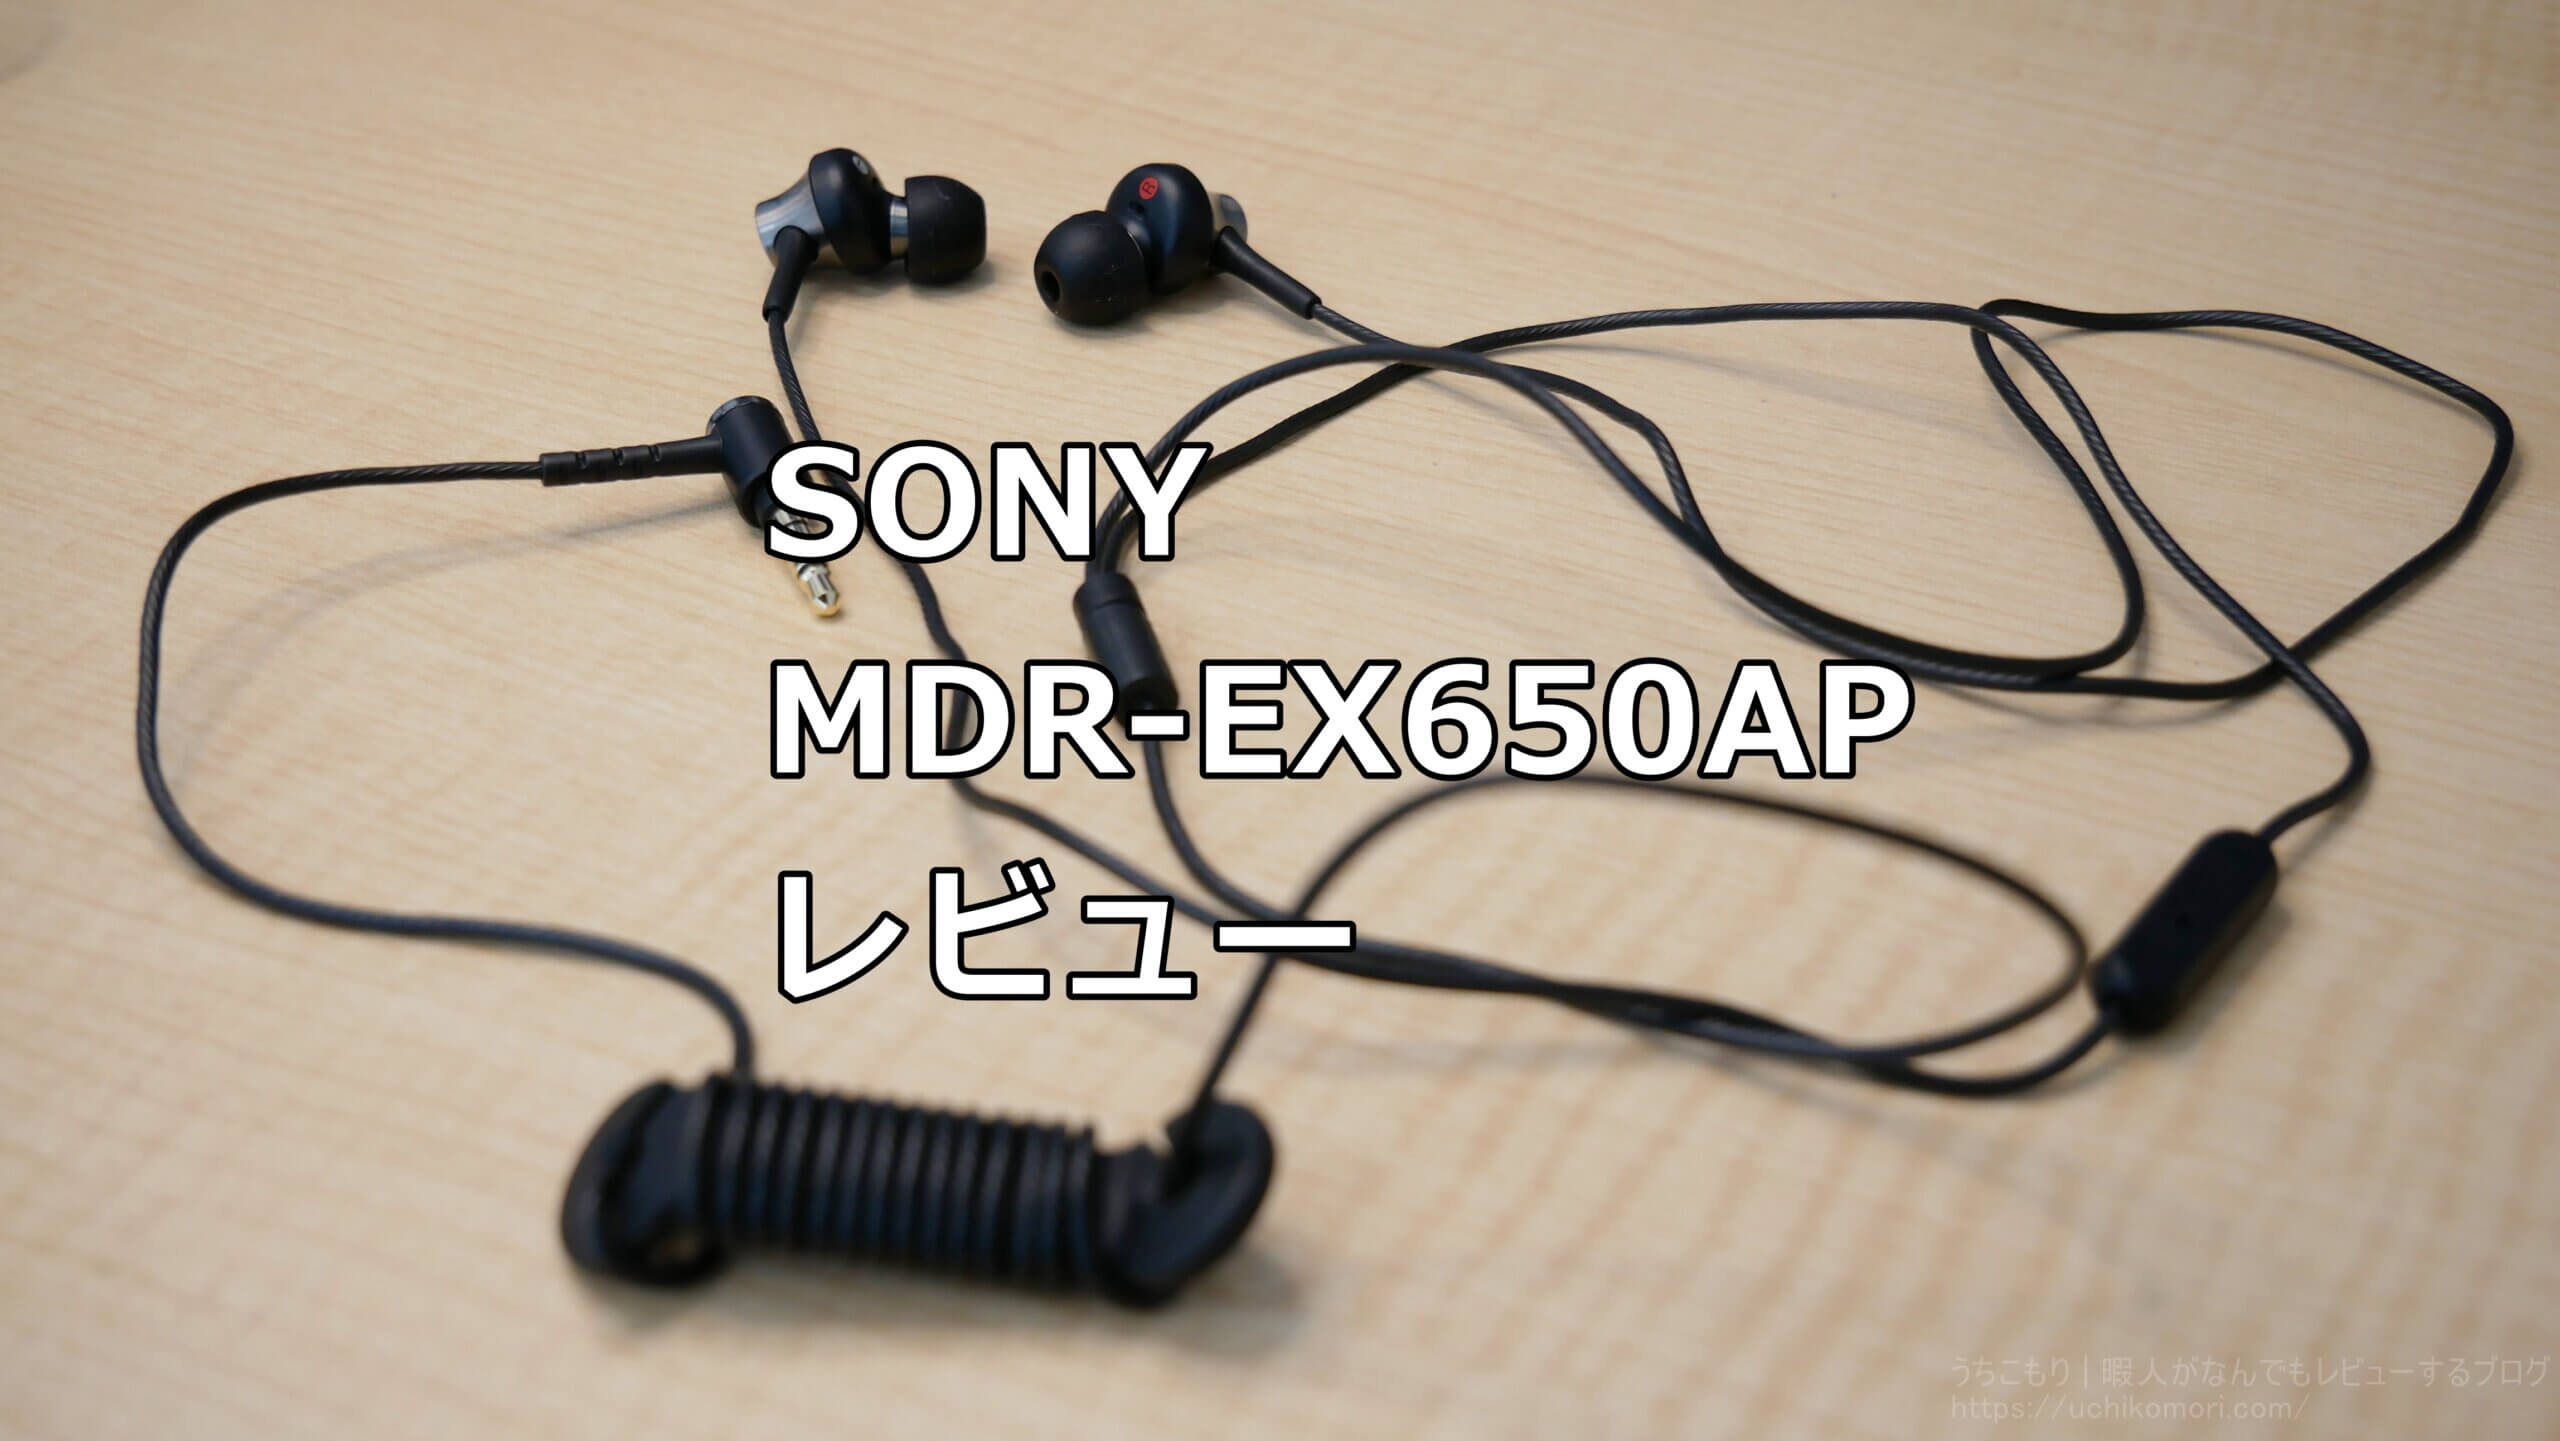 ソニー イヤホン MDR-EX650AP : カナル型 真鍮製ハウジング マイク付